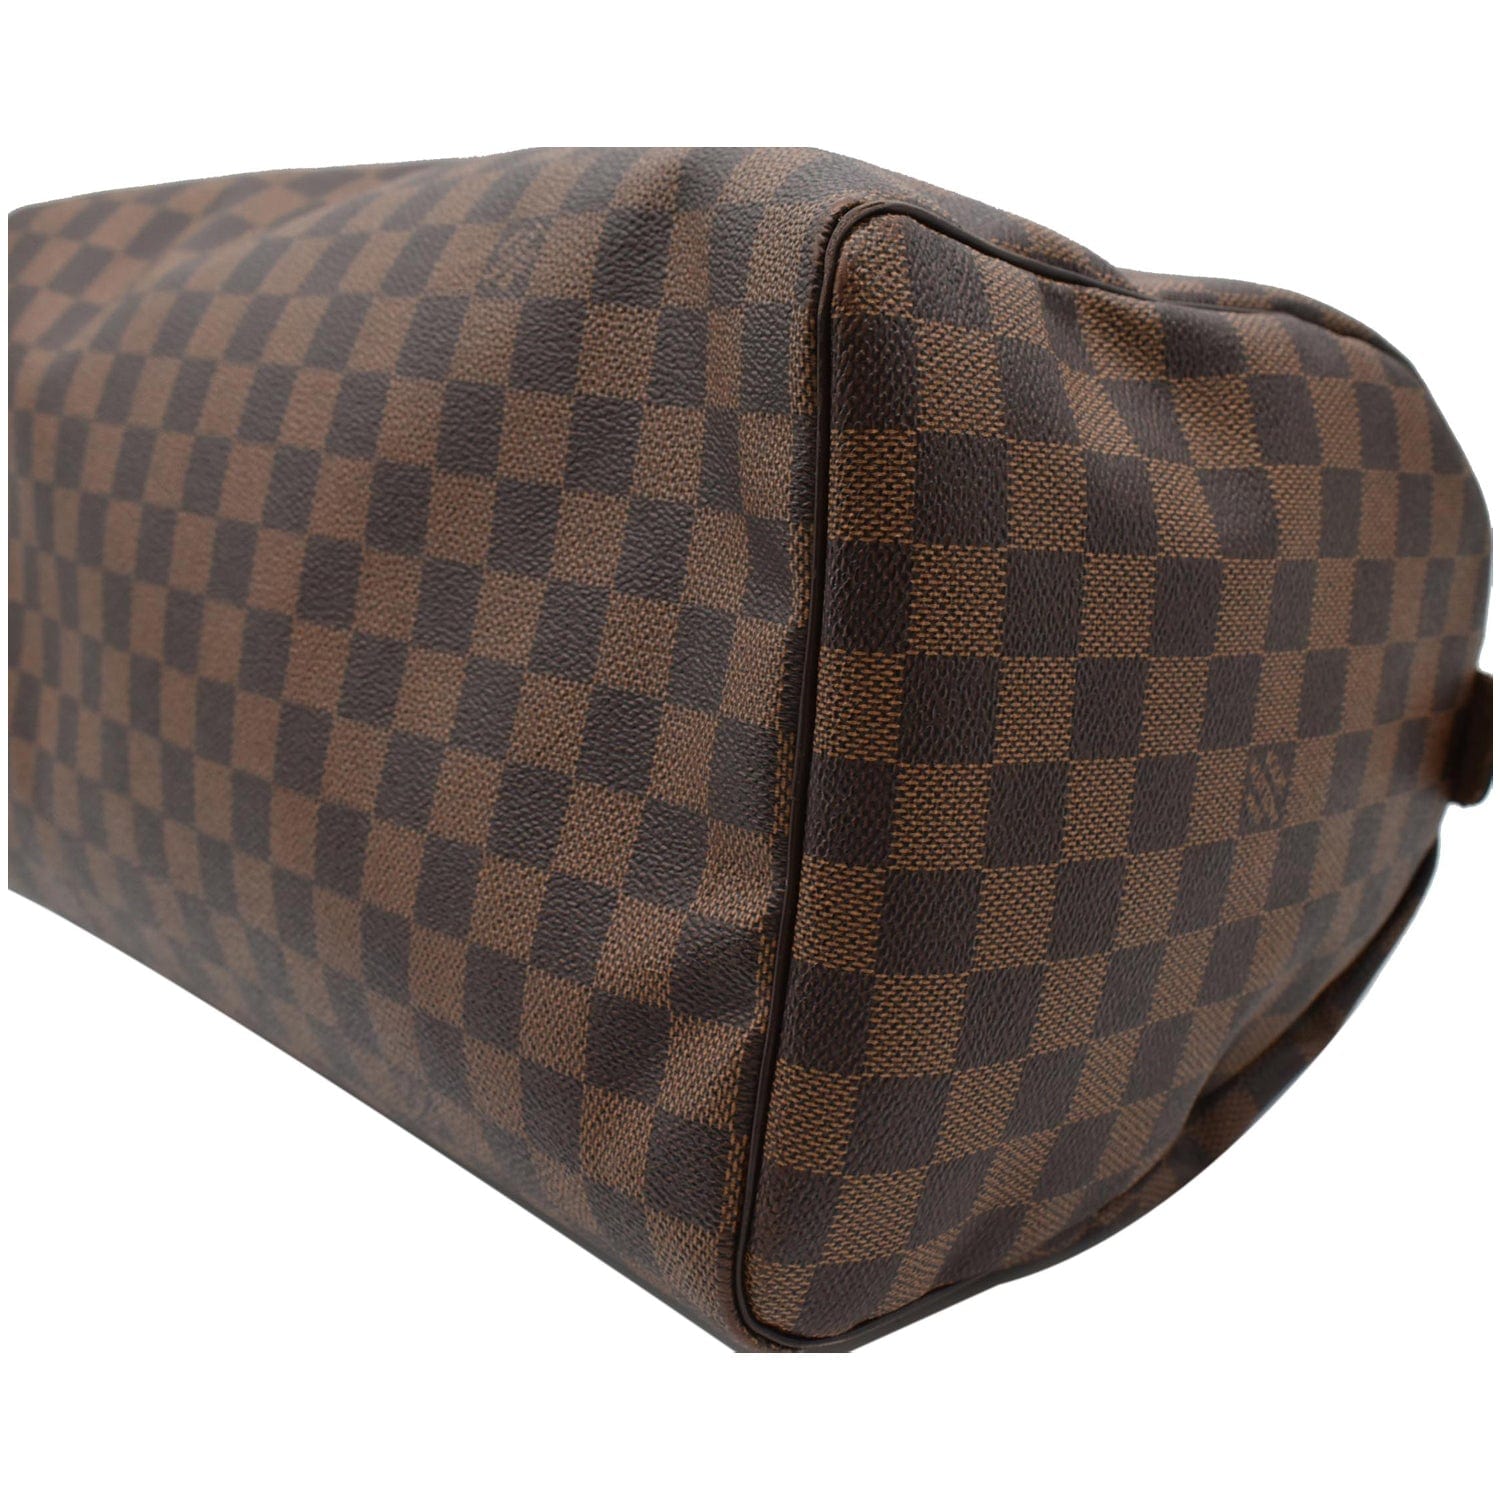 Louis Vuitton Brown Damiere Ebene Speedy 35 Handbag